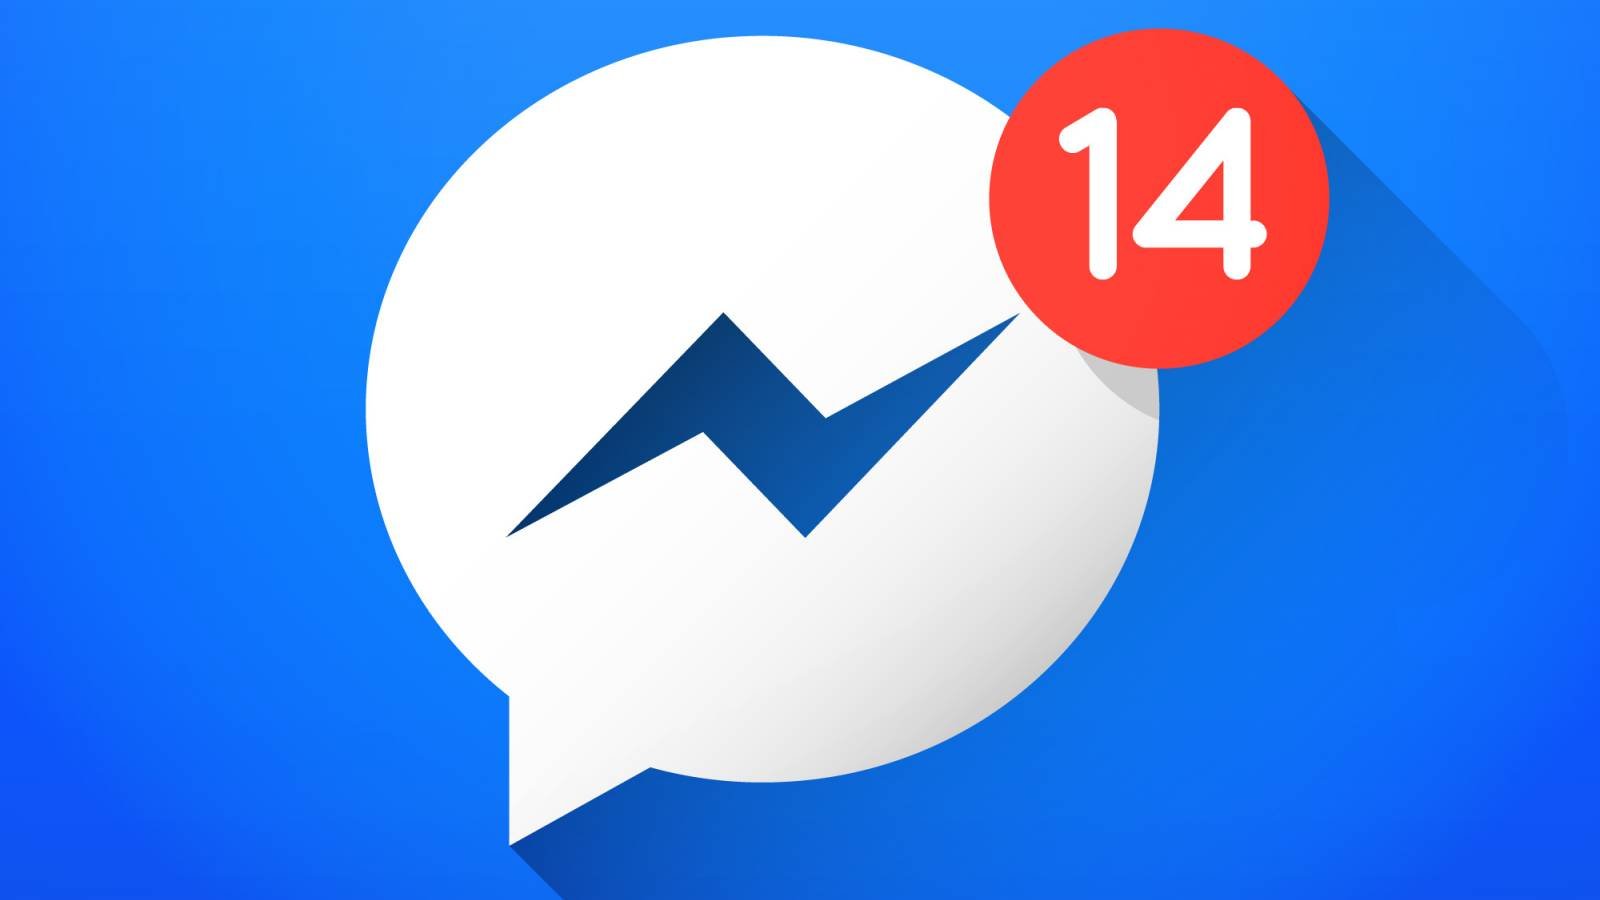 Facebook Messenger släpper VIKTIGA officiella iPhone Android-uppdateringar